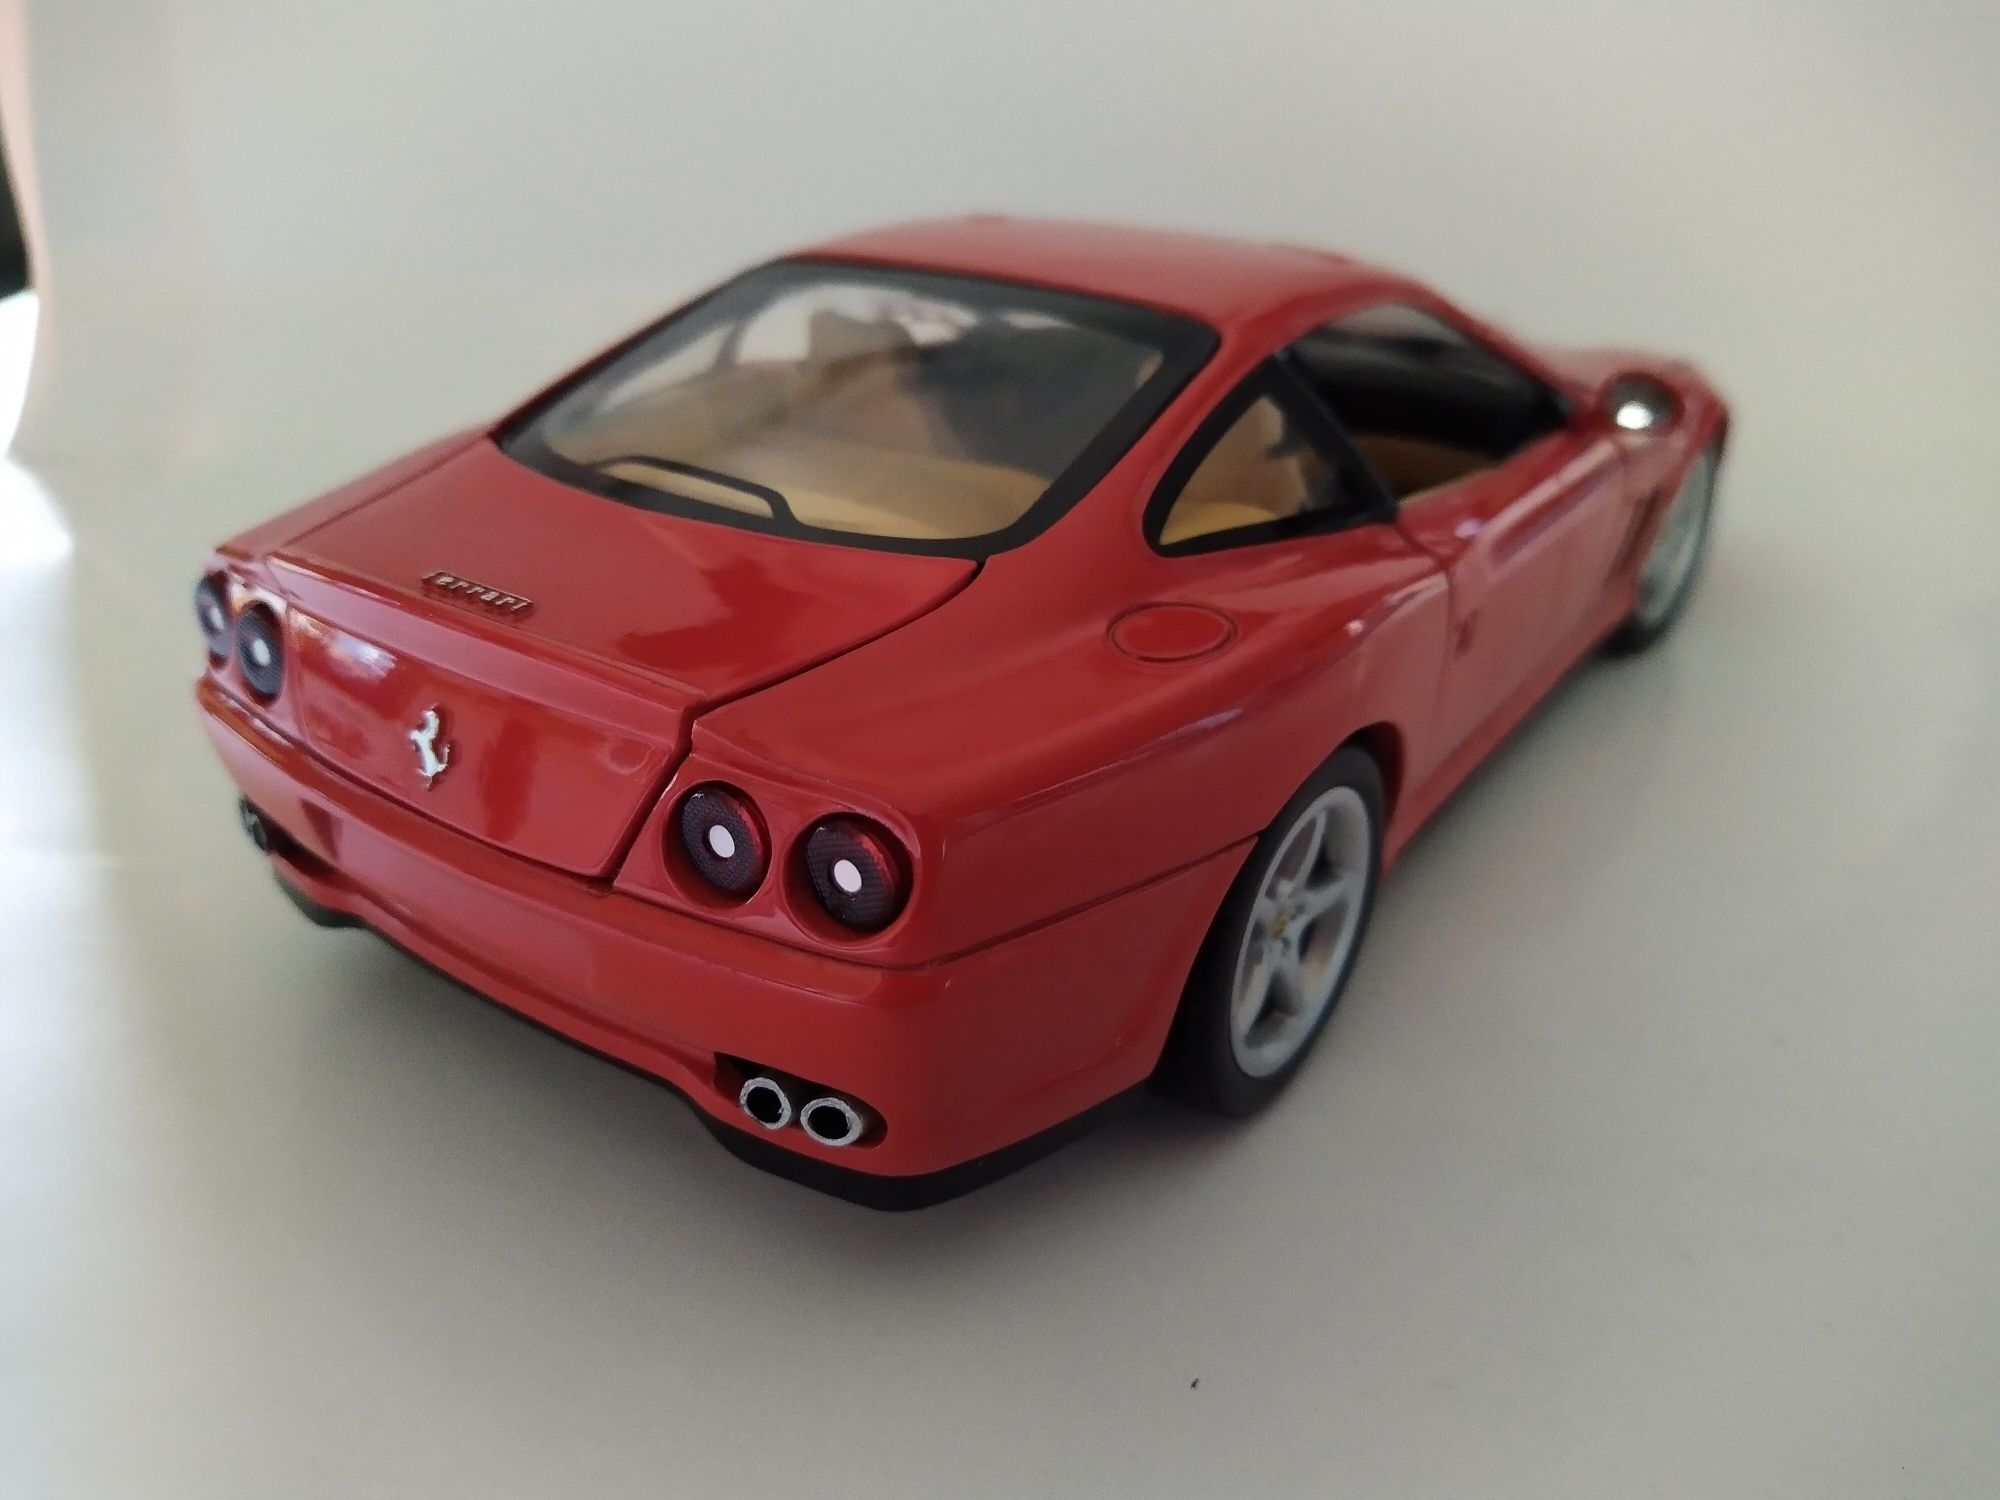 Ferrari 550 Maranello Hot wheels 1:18